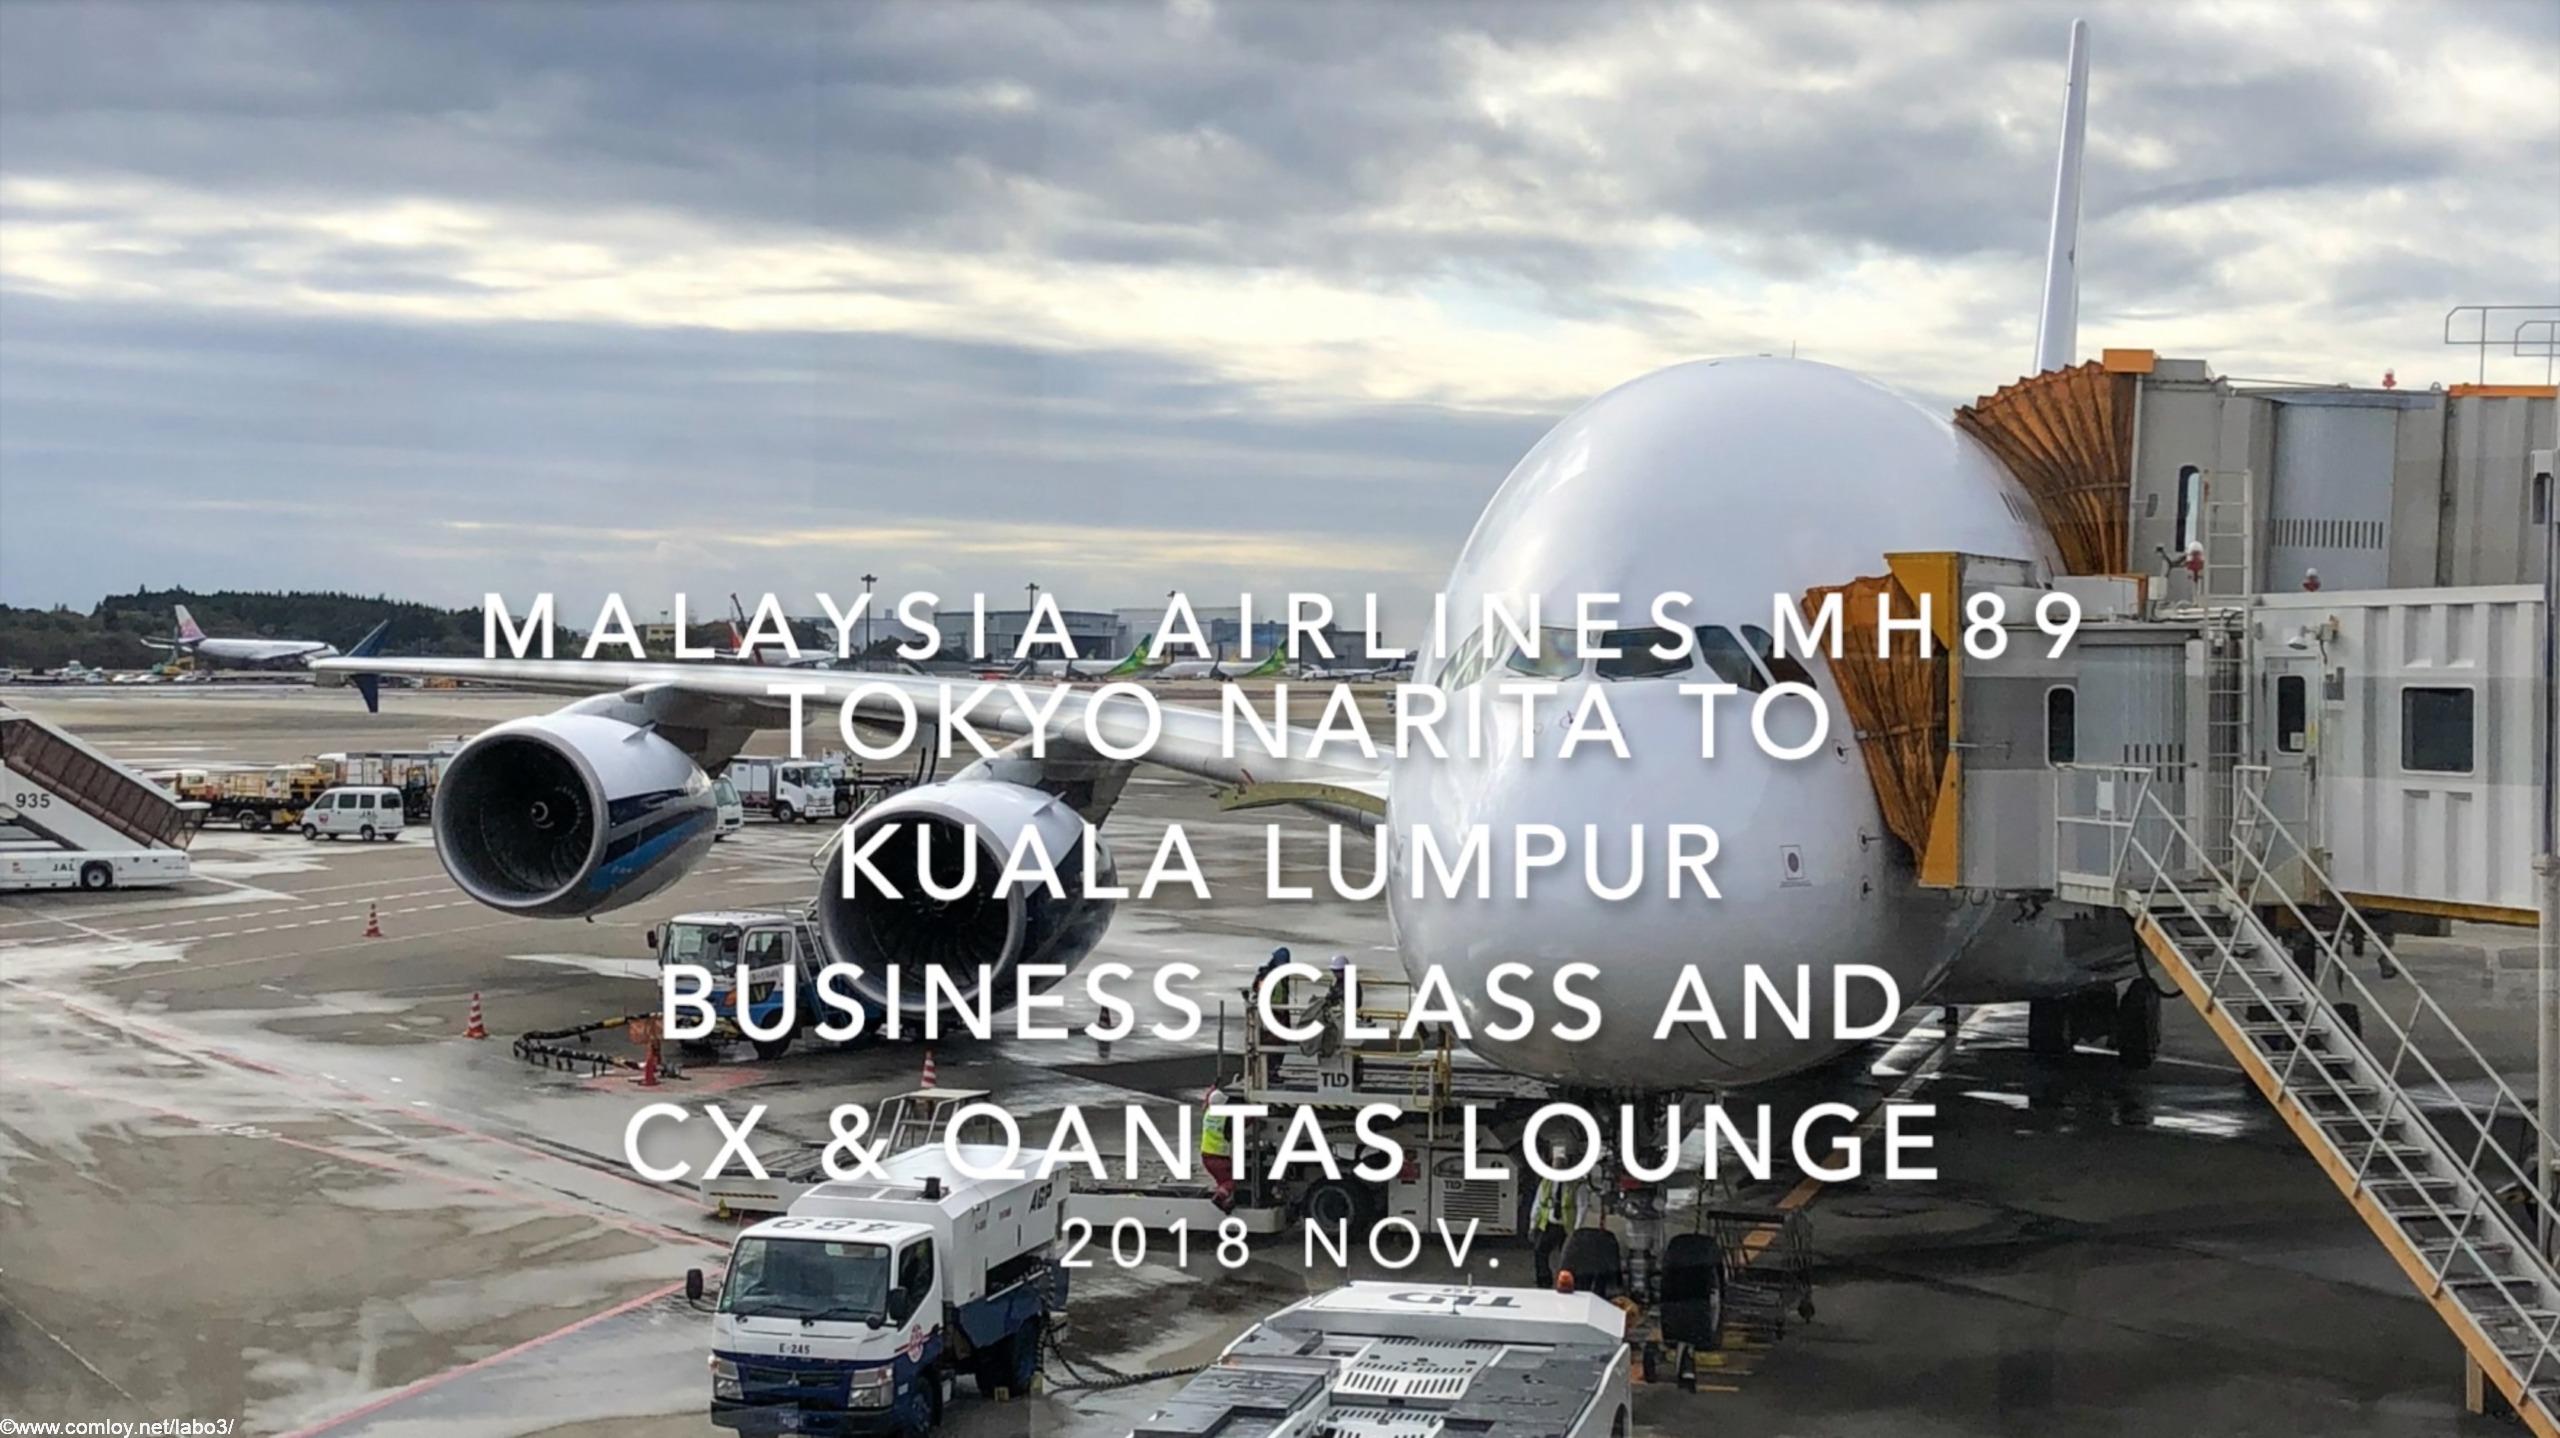 【Flight Report】Malaysia Airlines MH89 TOKYO NARITA to Kuala Lumpur Business Class and Cathay Pacific Qantas Lounge 2018 NOV マレーシア航空 成田 - クアラルンプール ビジネスクラス搭乗記